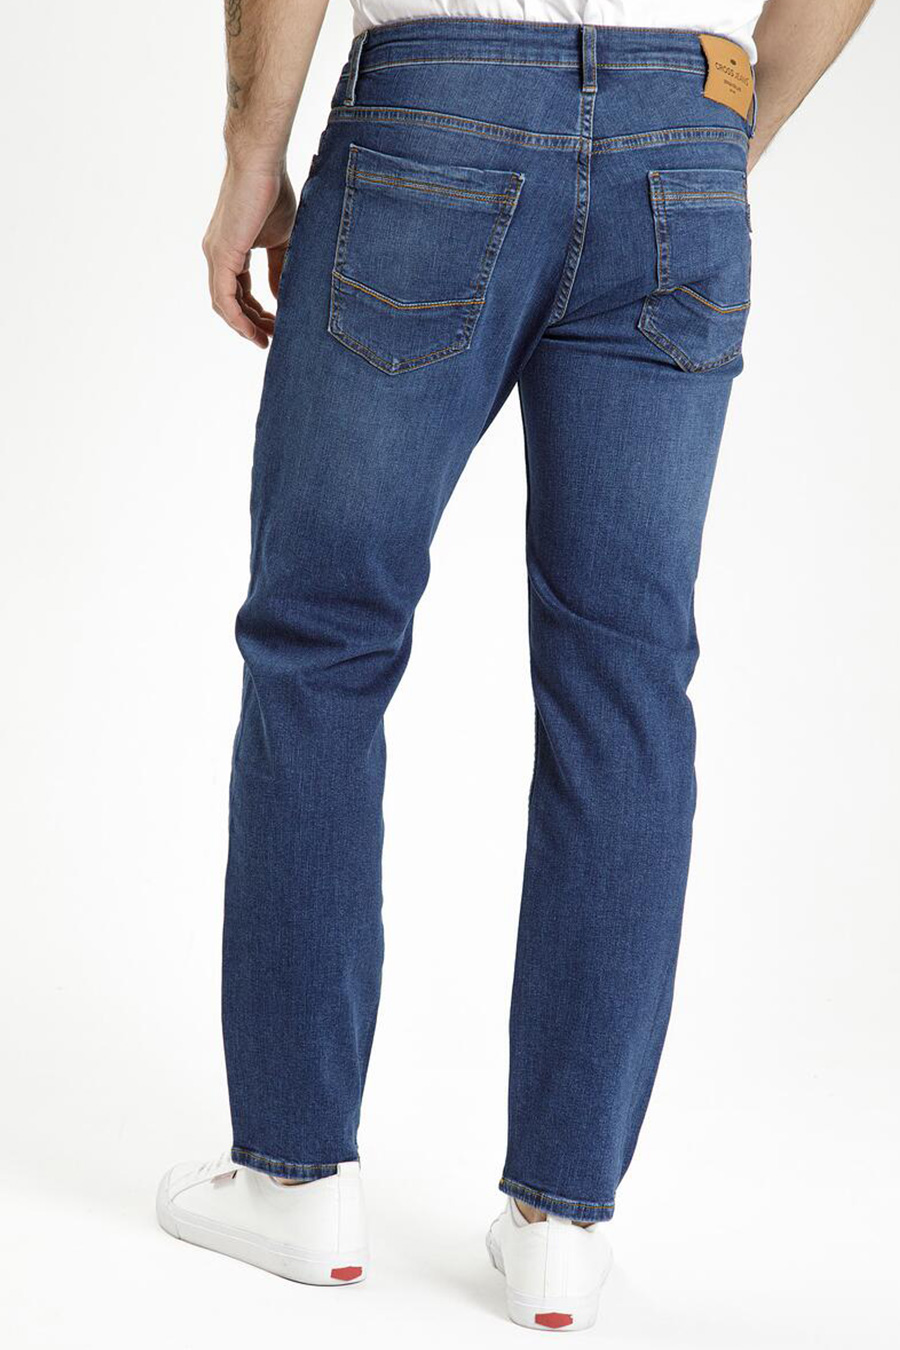 Jeans CROSS JEANS F194-670